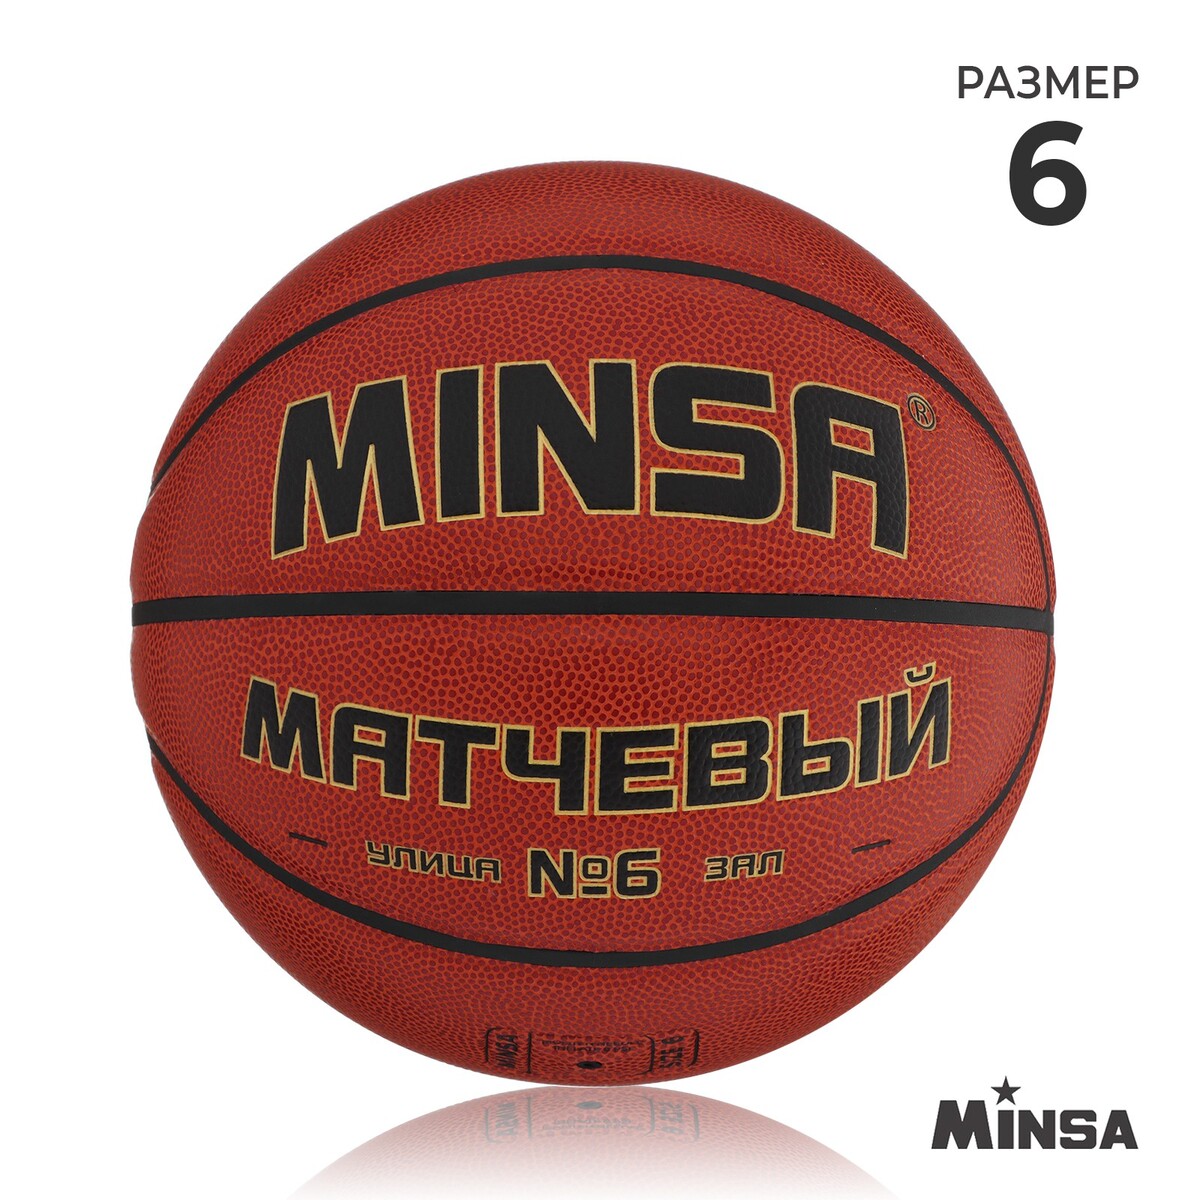 Баскетбольный мяч minsa, матчевый, microfiber pu, клееный, 8 панелей, р. 6 баскетбольный мяч minsa тренировочный pu клееный 8 панелей р 6